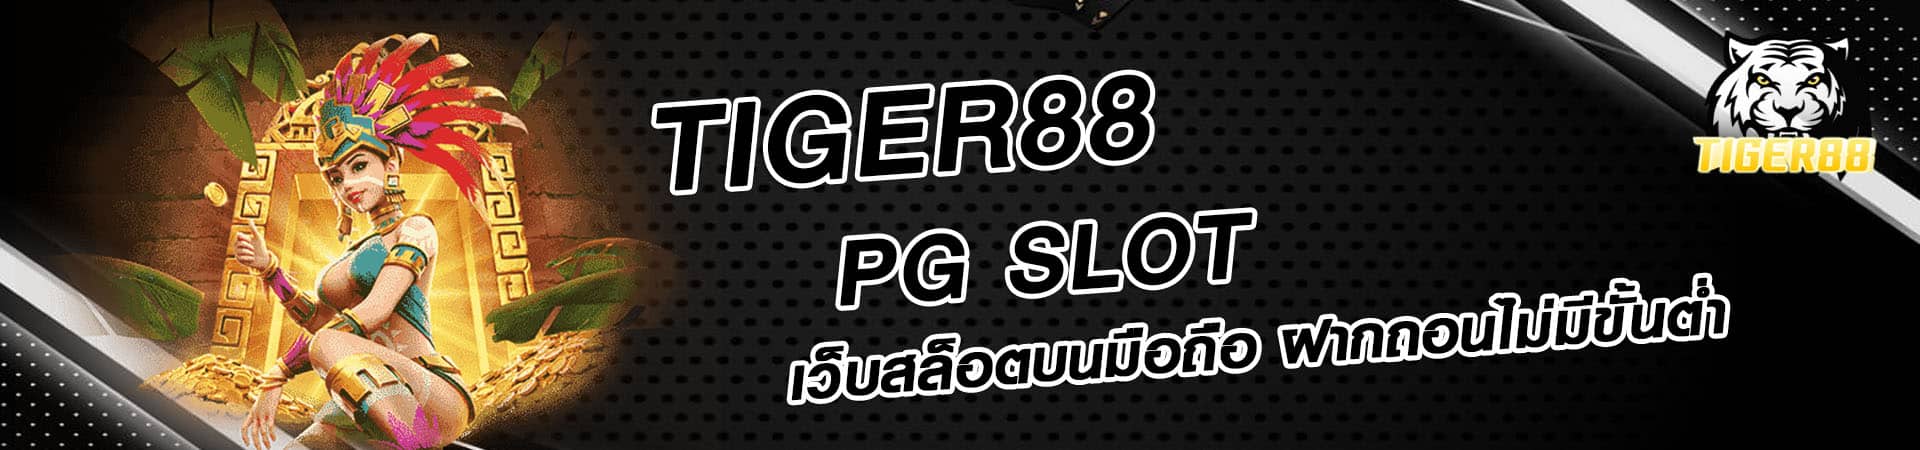 tiger88-banner1-PG-SLOT